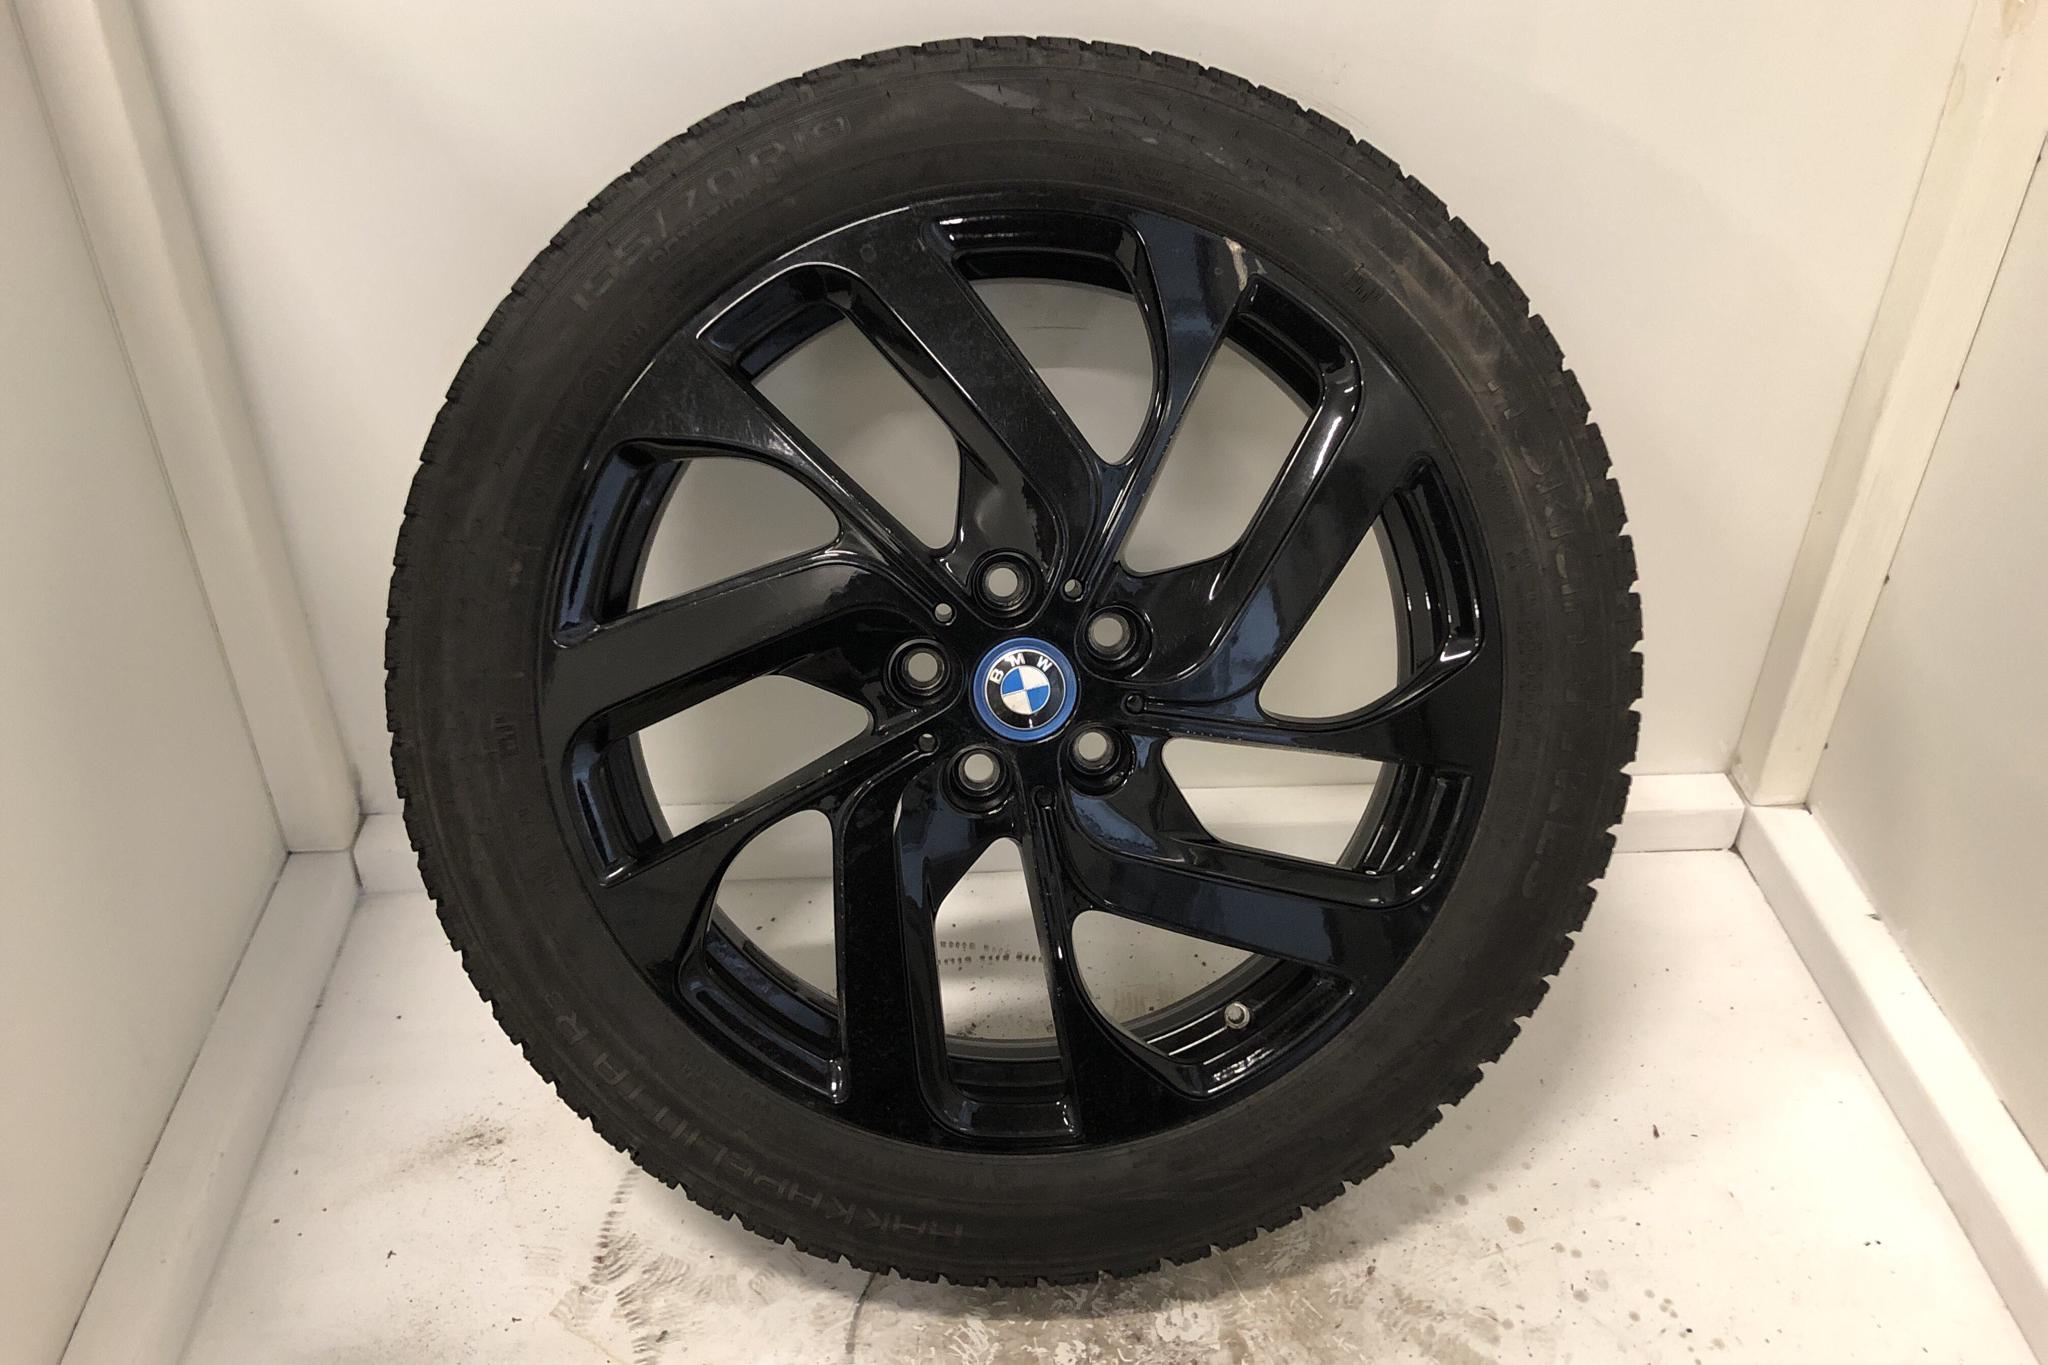 BMW i3s 94Ah, I01 (184hk) - 4 126 mil - Automat - vit - 2018